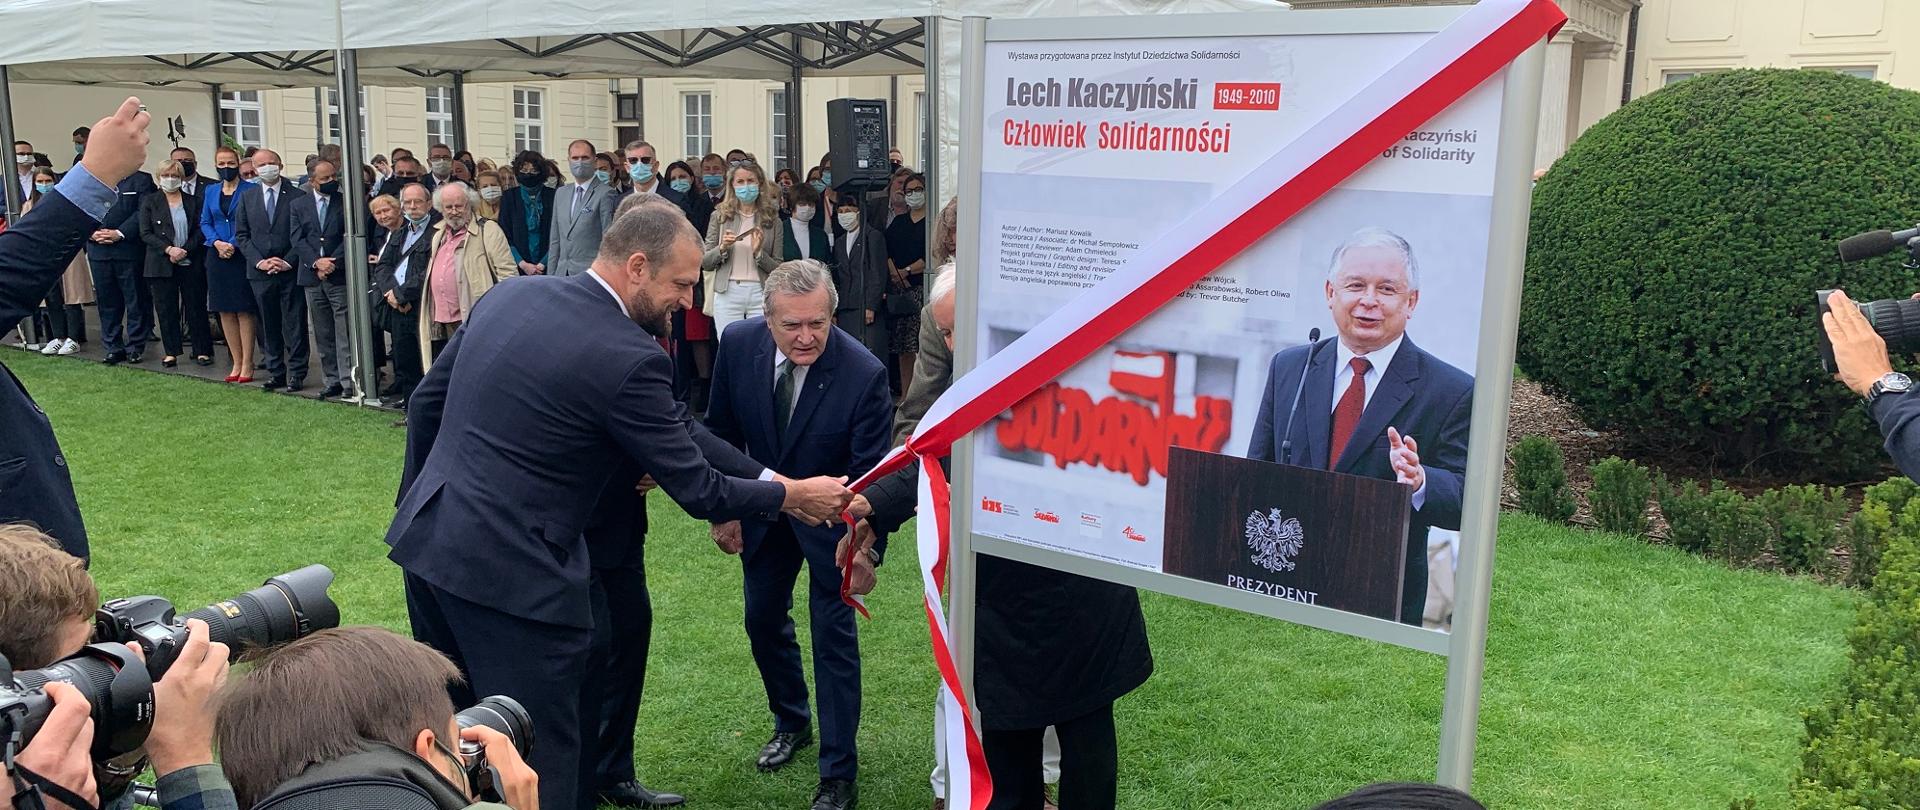 Ludzie w garniturach stoją przed tablicą ze zdjęciem Lecha Kaczyńskiego, za nimi budynek MKiDN.